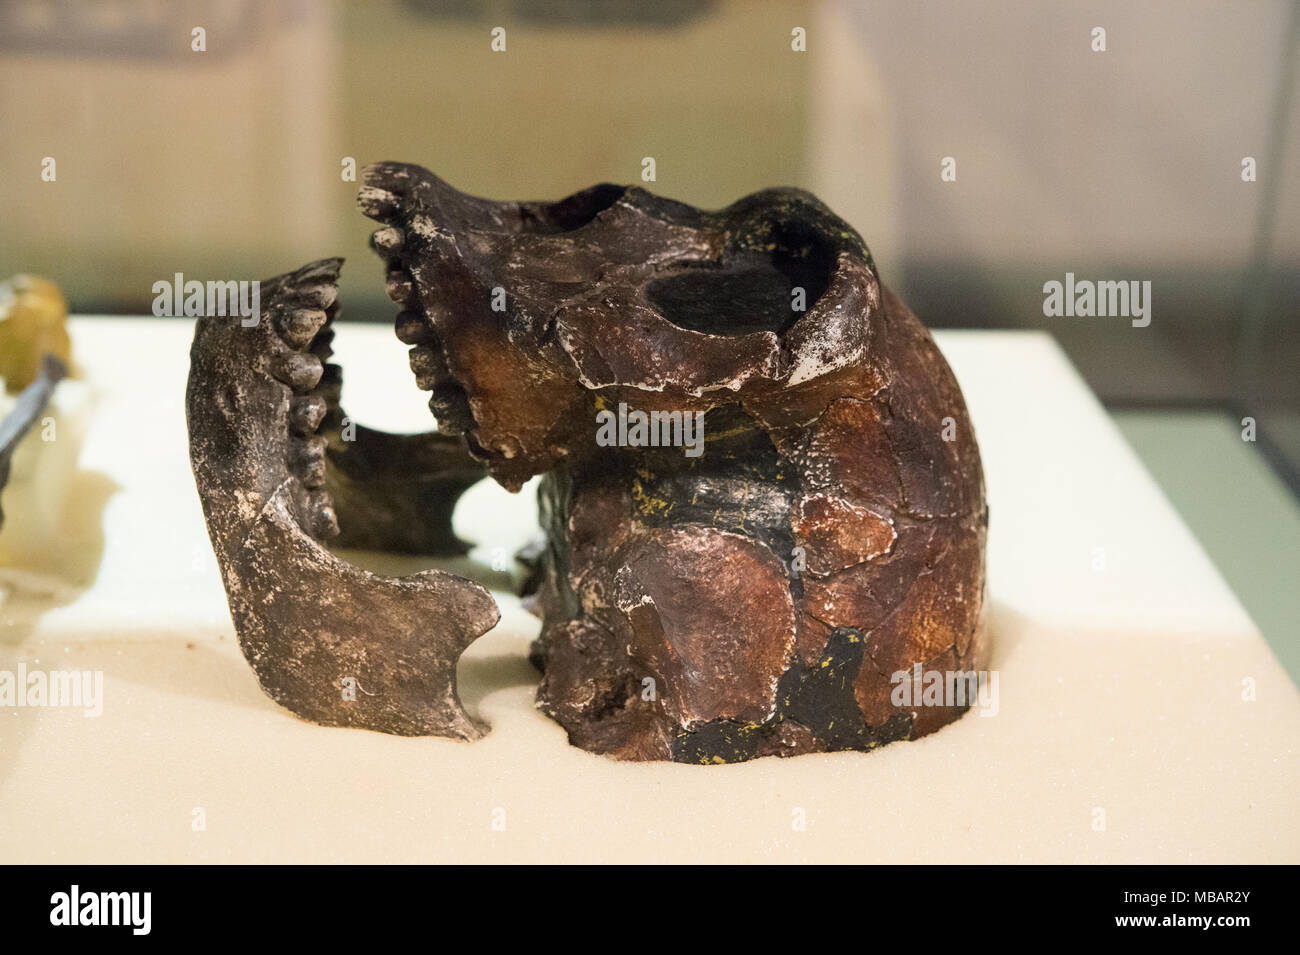 Schädel von Hominiden, Homo erectus, östlich von Lake Turkana, Kenia, Afrika. 1,8 Millionen Jahre alt. Nairobi National Museum, Nairobi, Kenia, Afrika Stockfoto